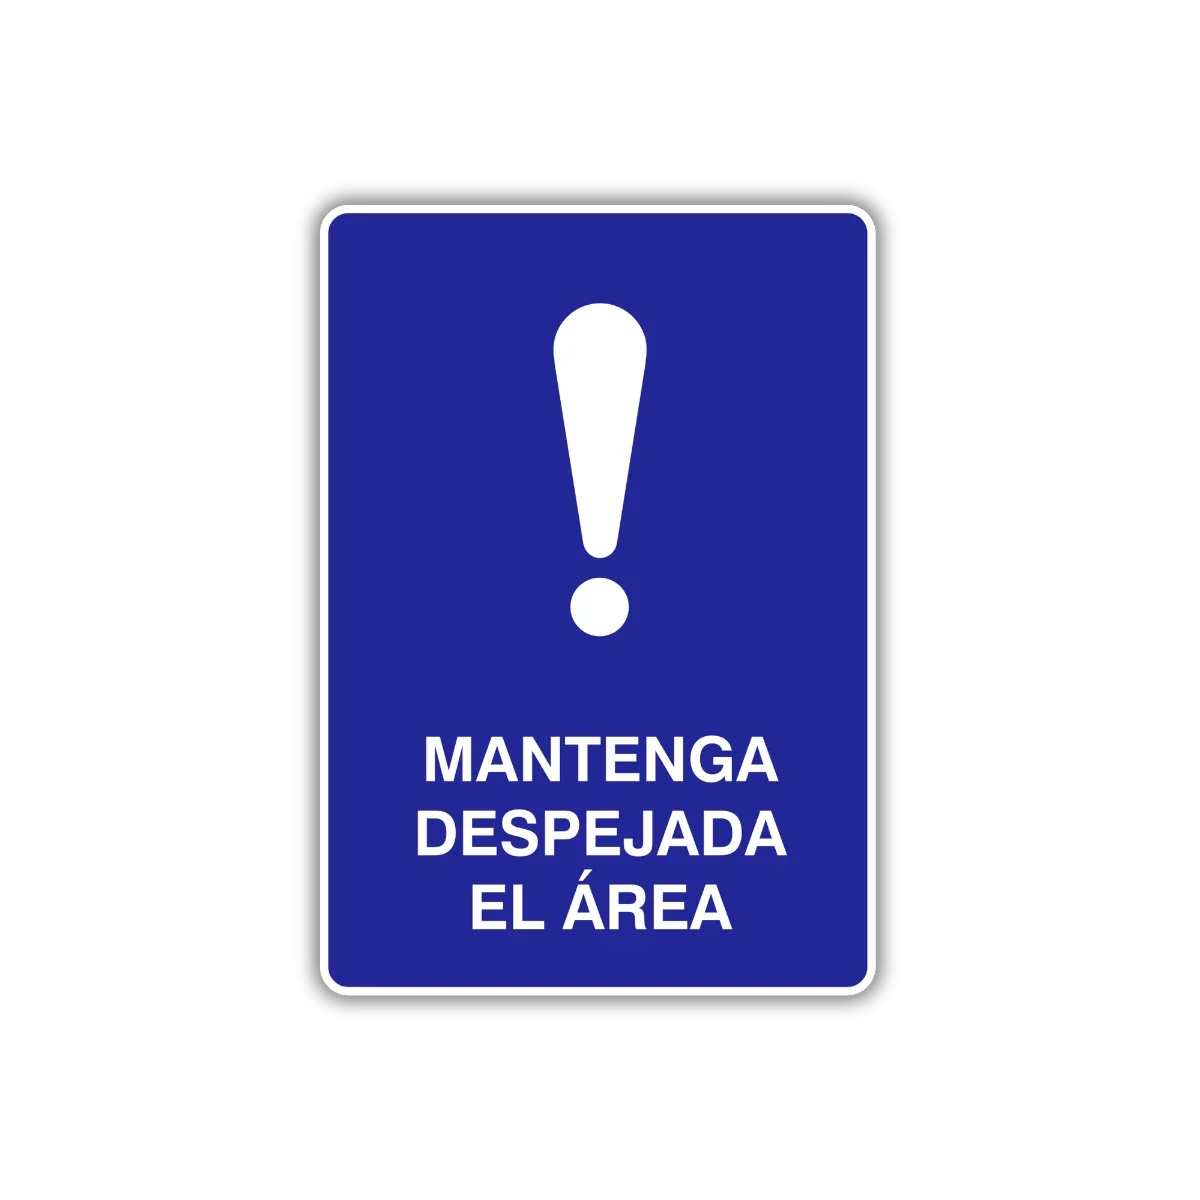 La señal Mantenga despejada el área es funcional para maximizar tiempos de operación